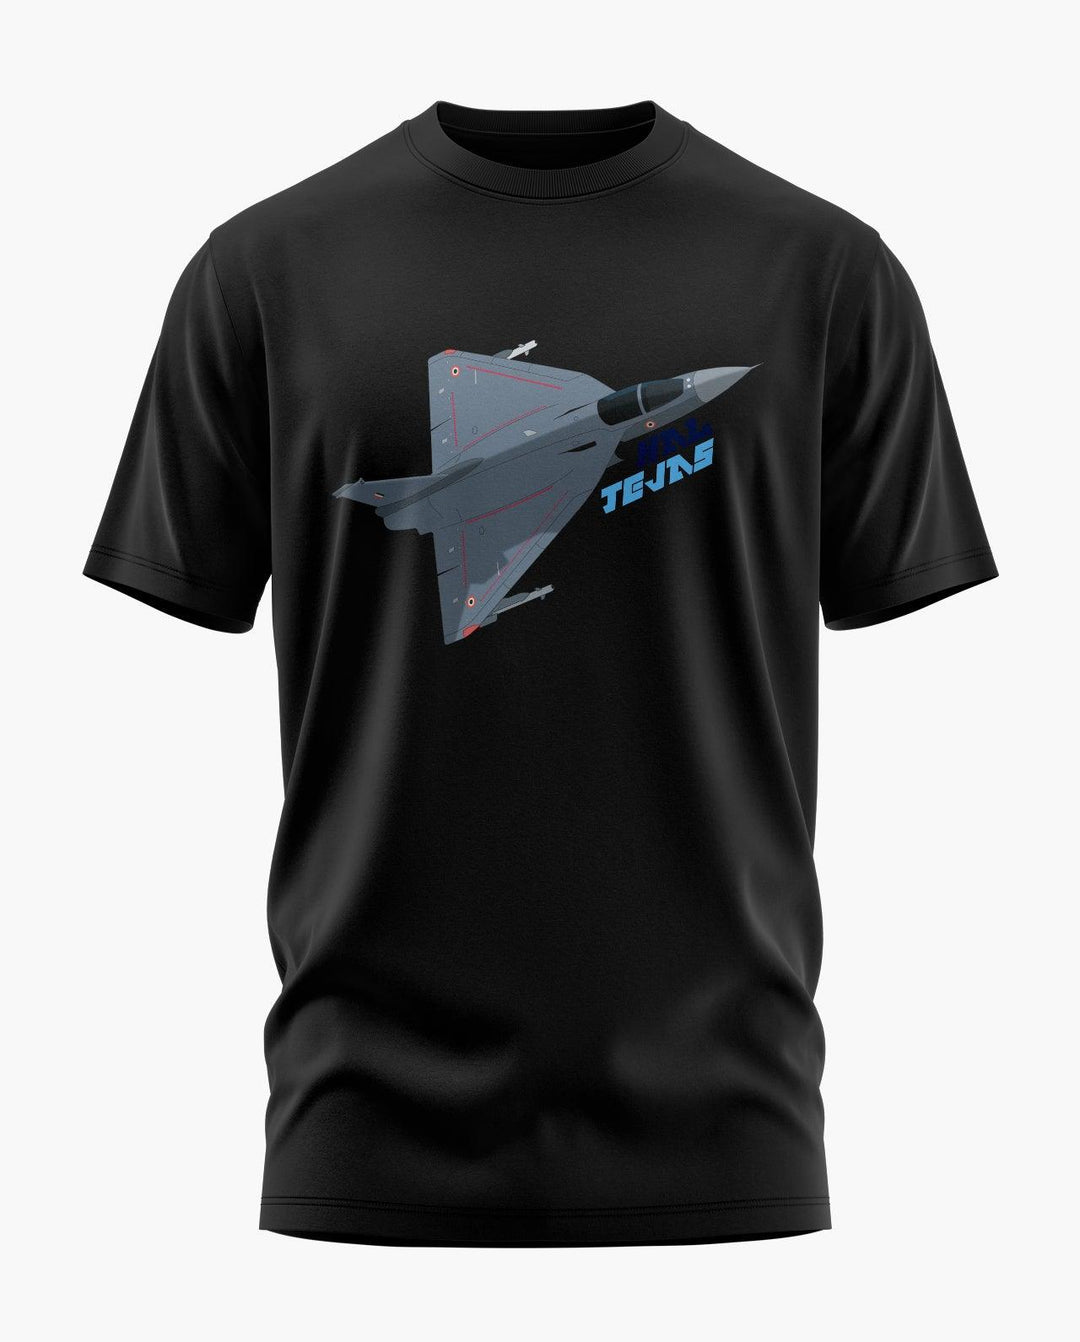 HAL Tejas Soars T-Shirt - Aero Armour